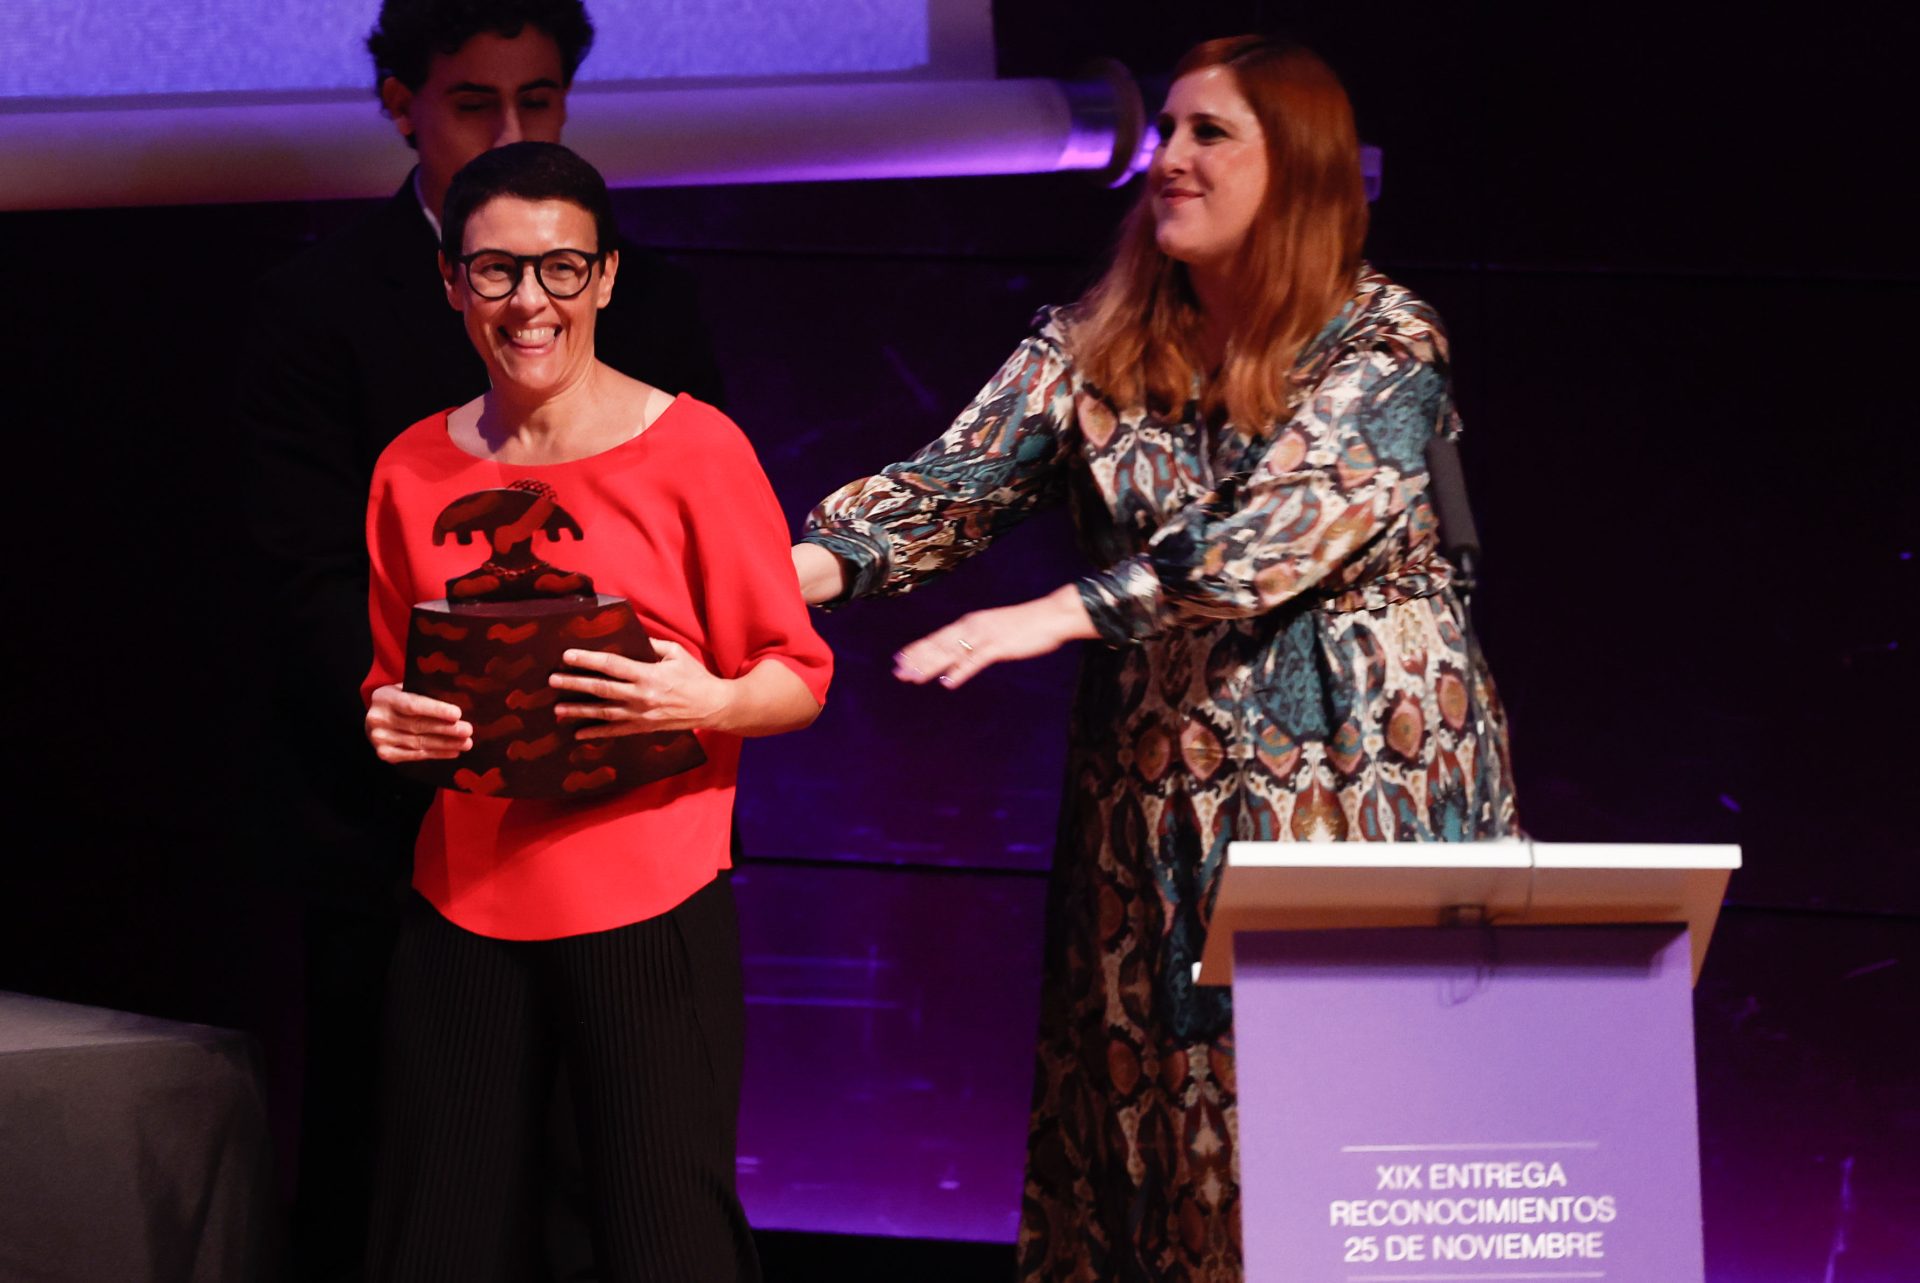 La periodista y responsable de Efeminista Macarena Baena Garrido recibe un premio en el acto institucional de Madrid con motivo del Día Internacional para la Eliminación de la Violencia contra las Mujeres.